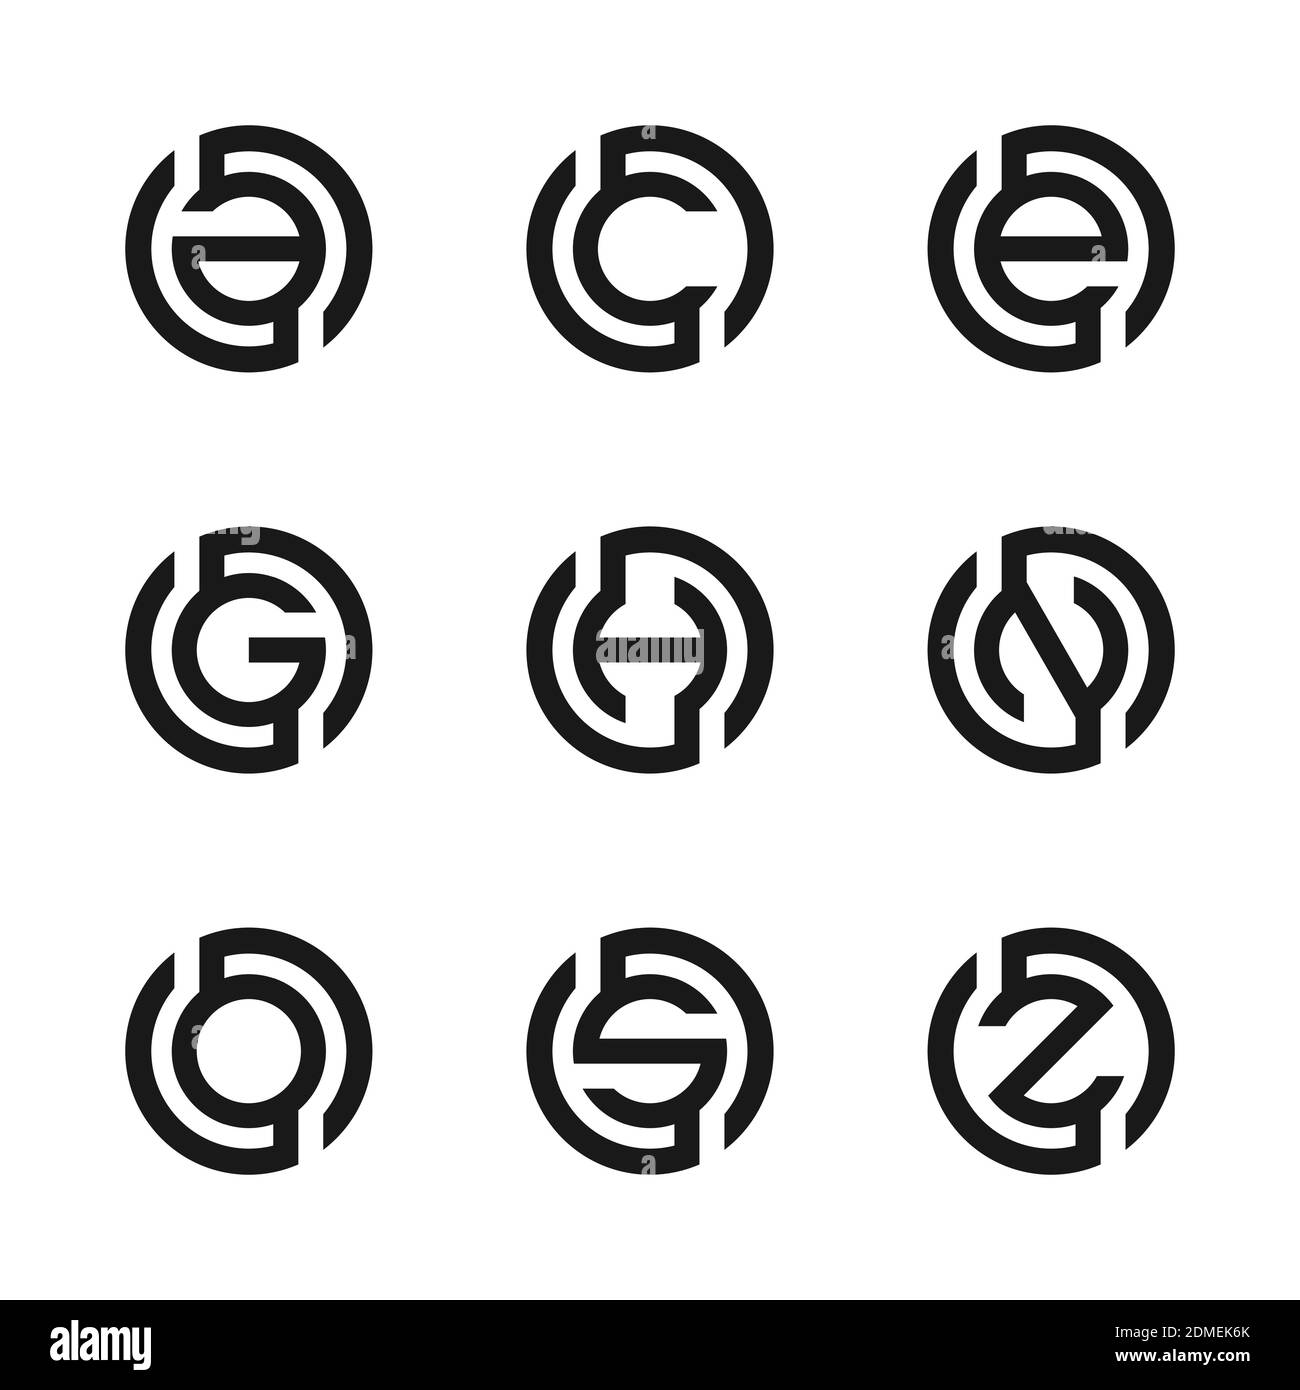 Gh Logo Stockfotos Und Bilder Kaufen Alamy